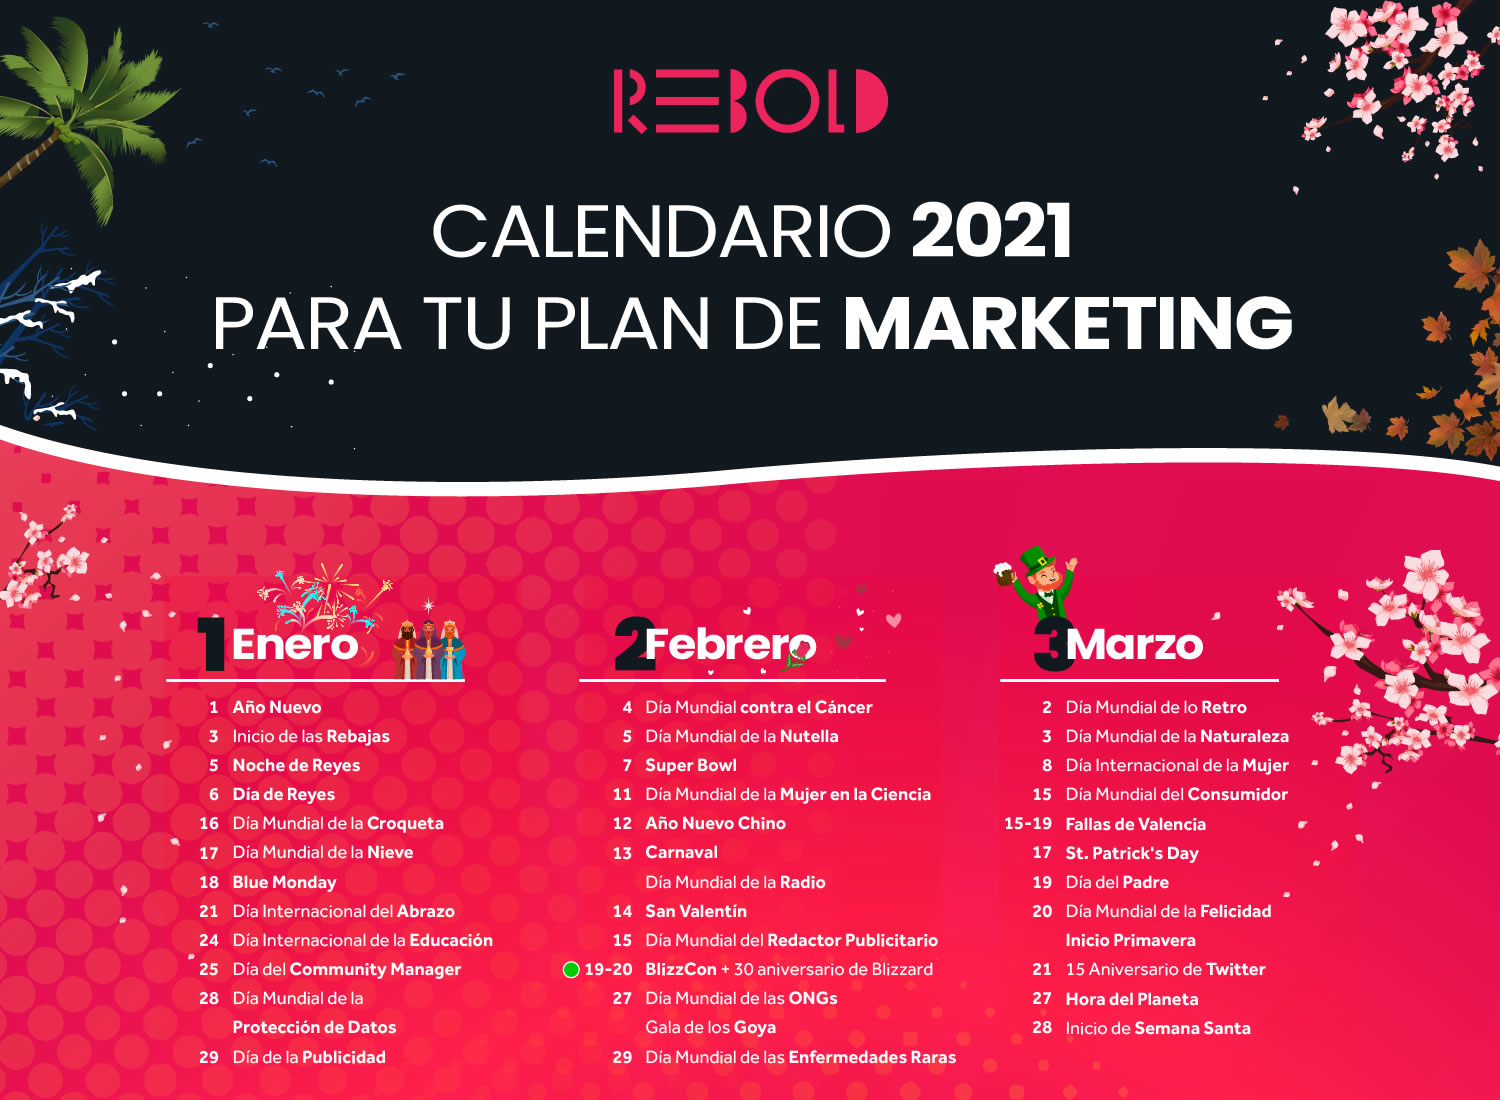 Calendario de marketing 2021: días clave para el éxito